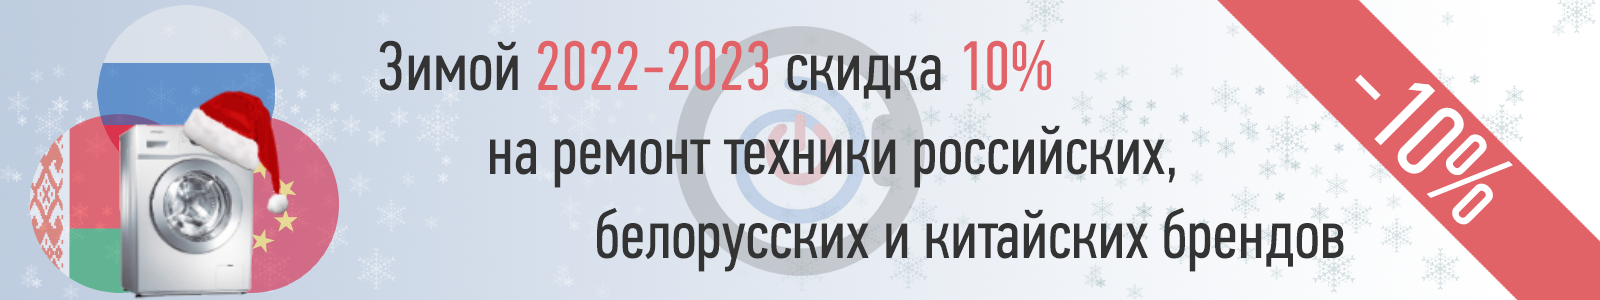 Акция зимой 2022-2023: скидка 10% на ремонт техники российских, белорусских, китайских производителей